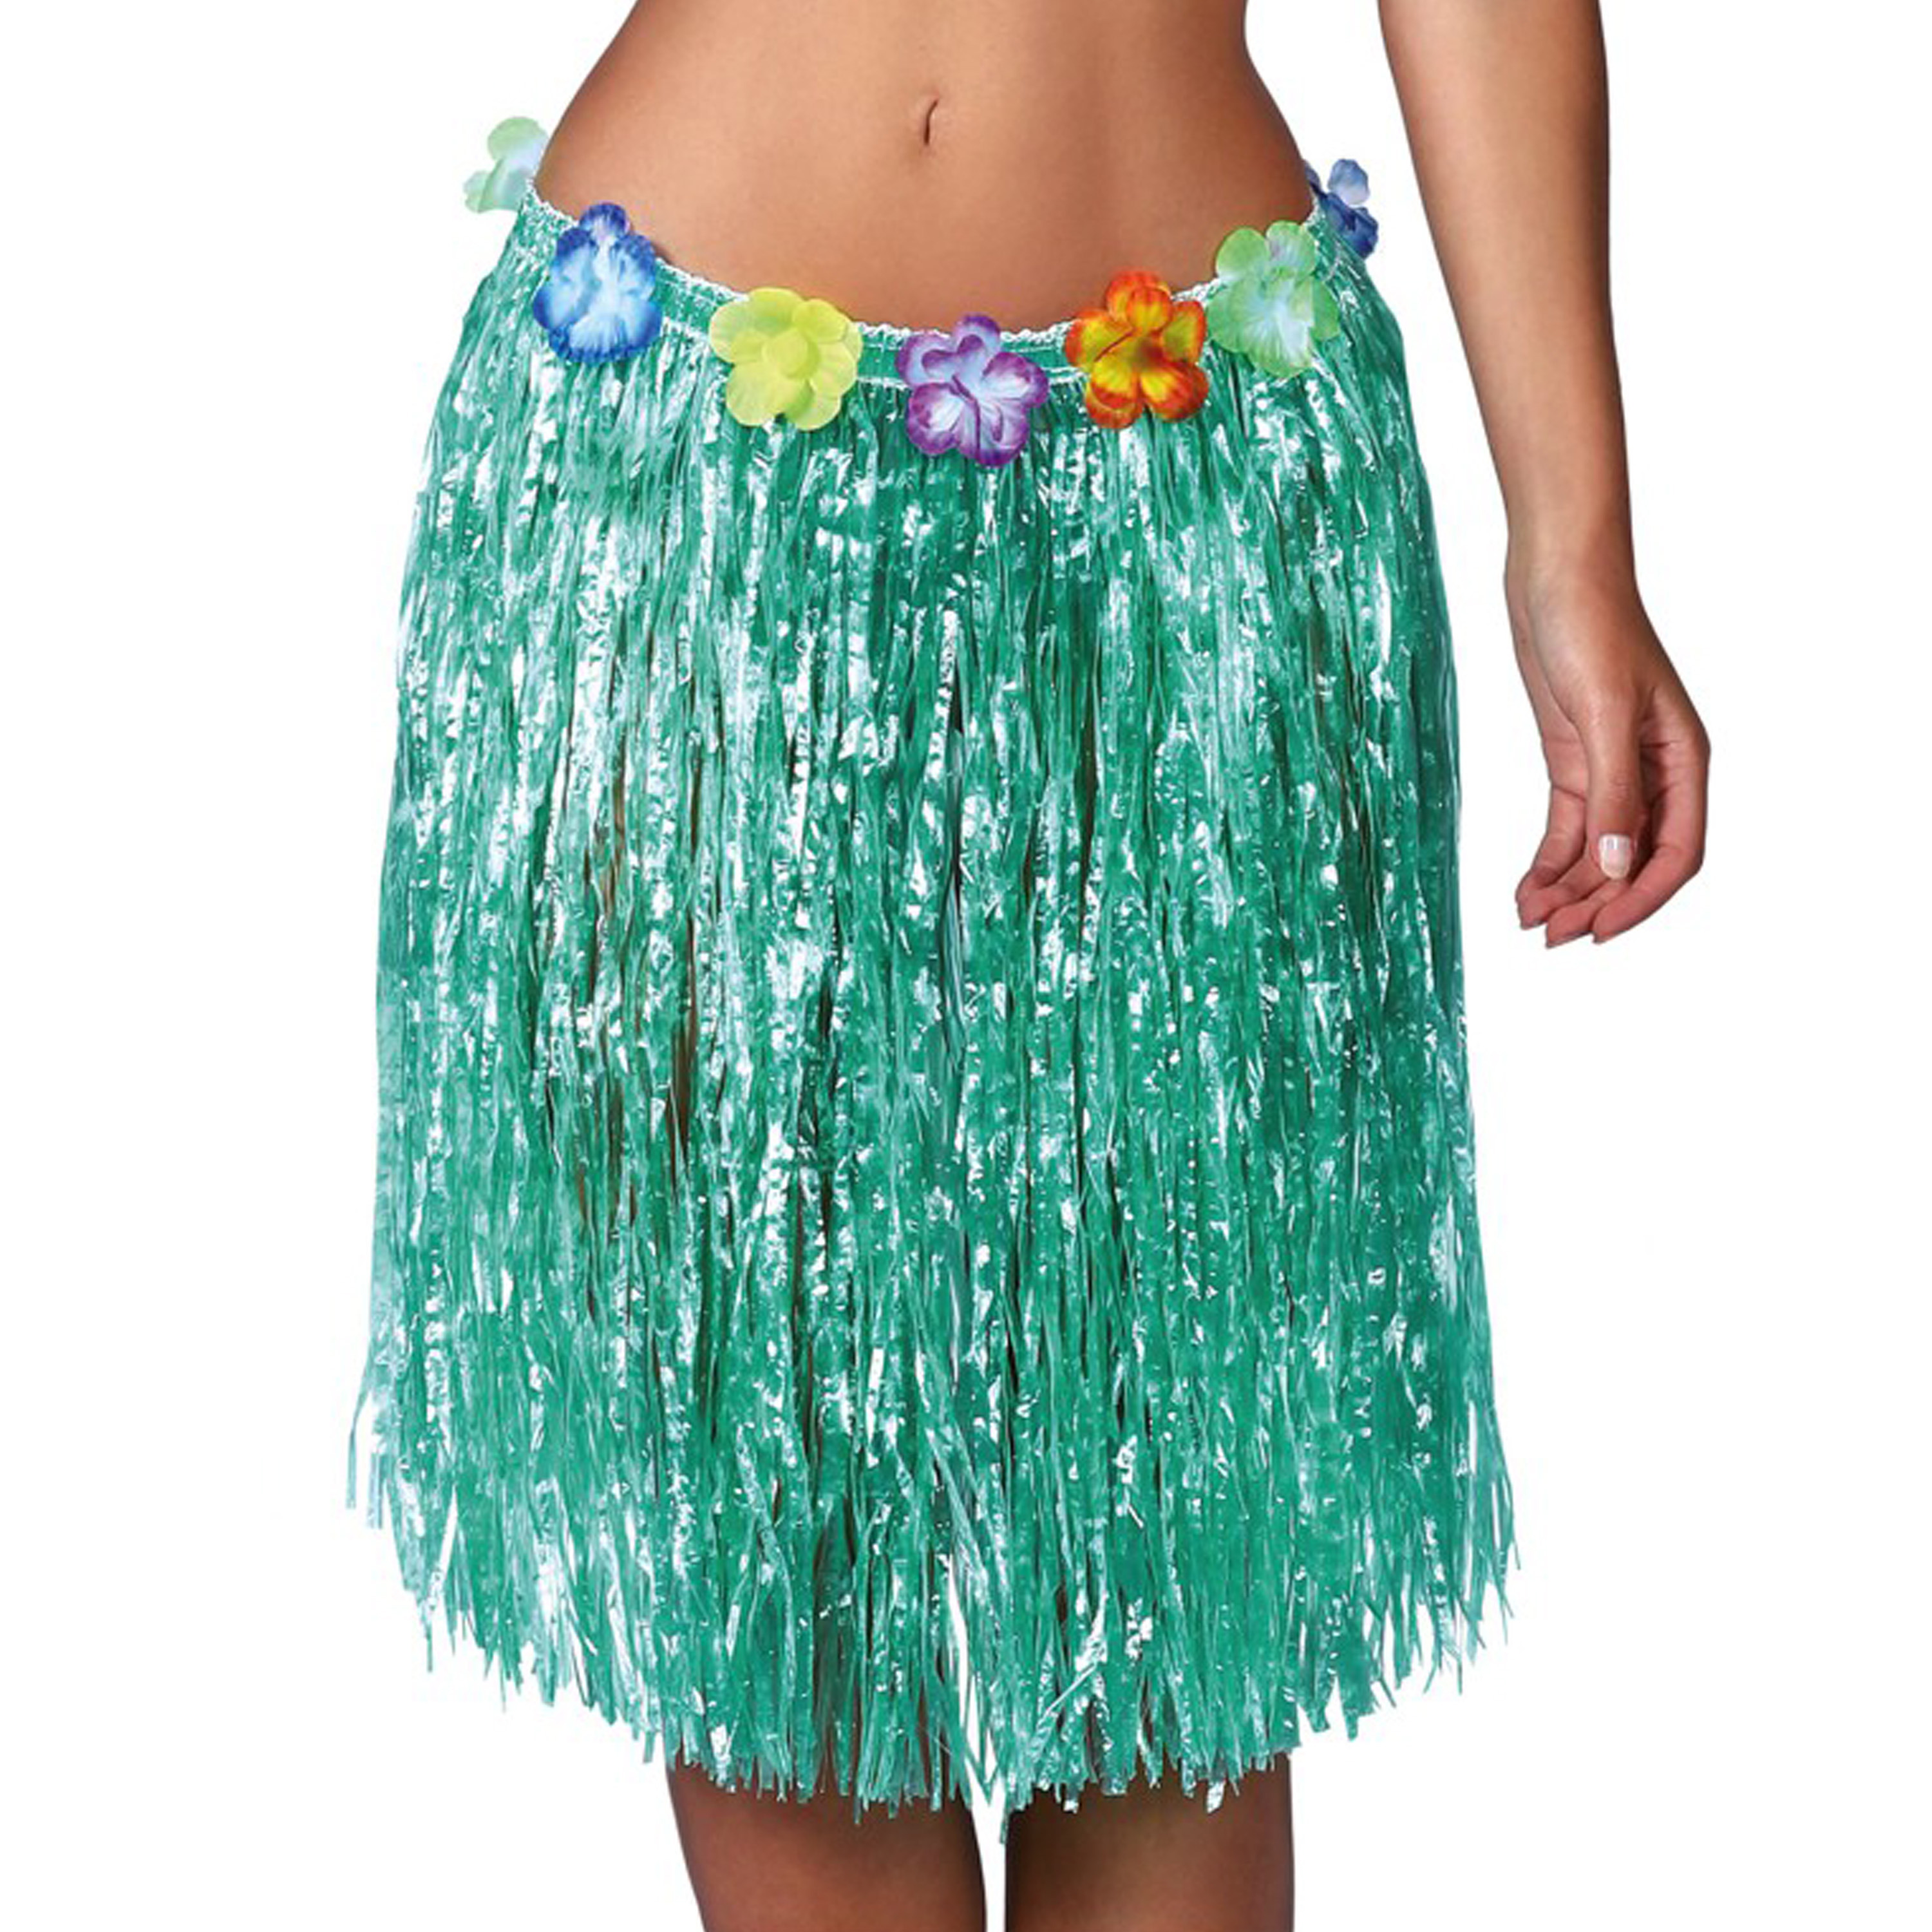 Fiestas Guirca Hawaii verkleed rokje voor volwassenen groen 50 cm hoela rok tropisch